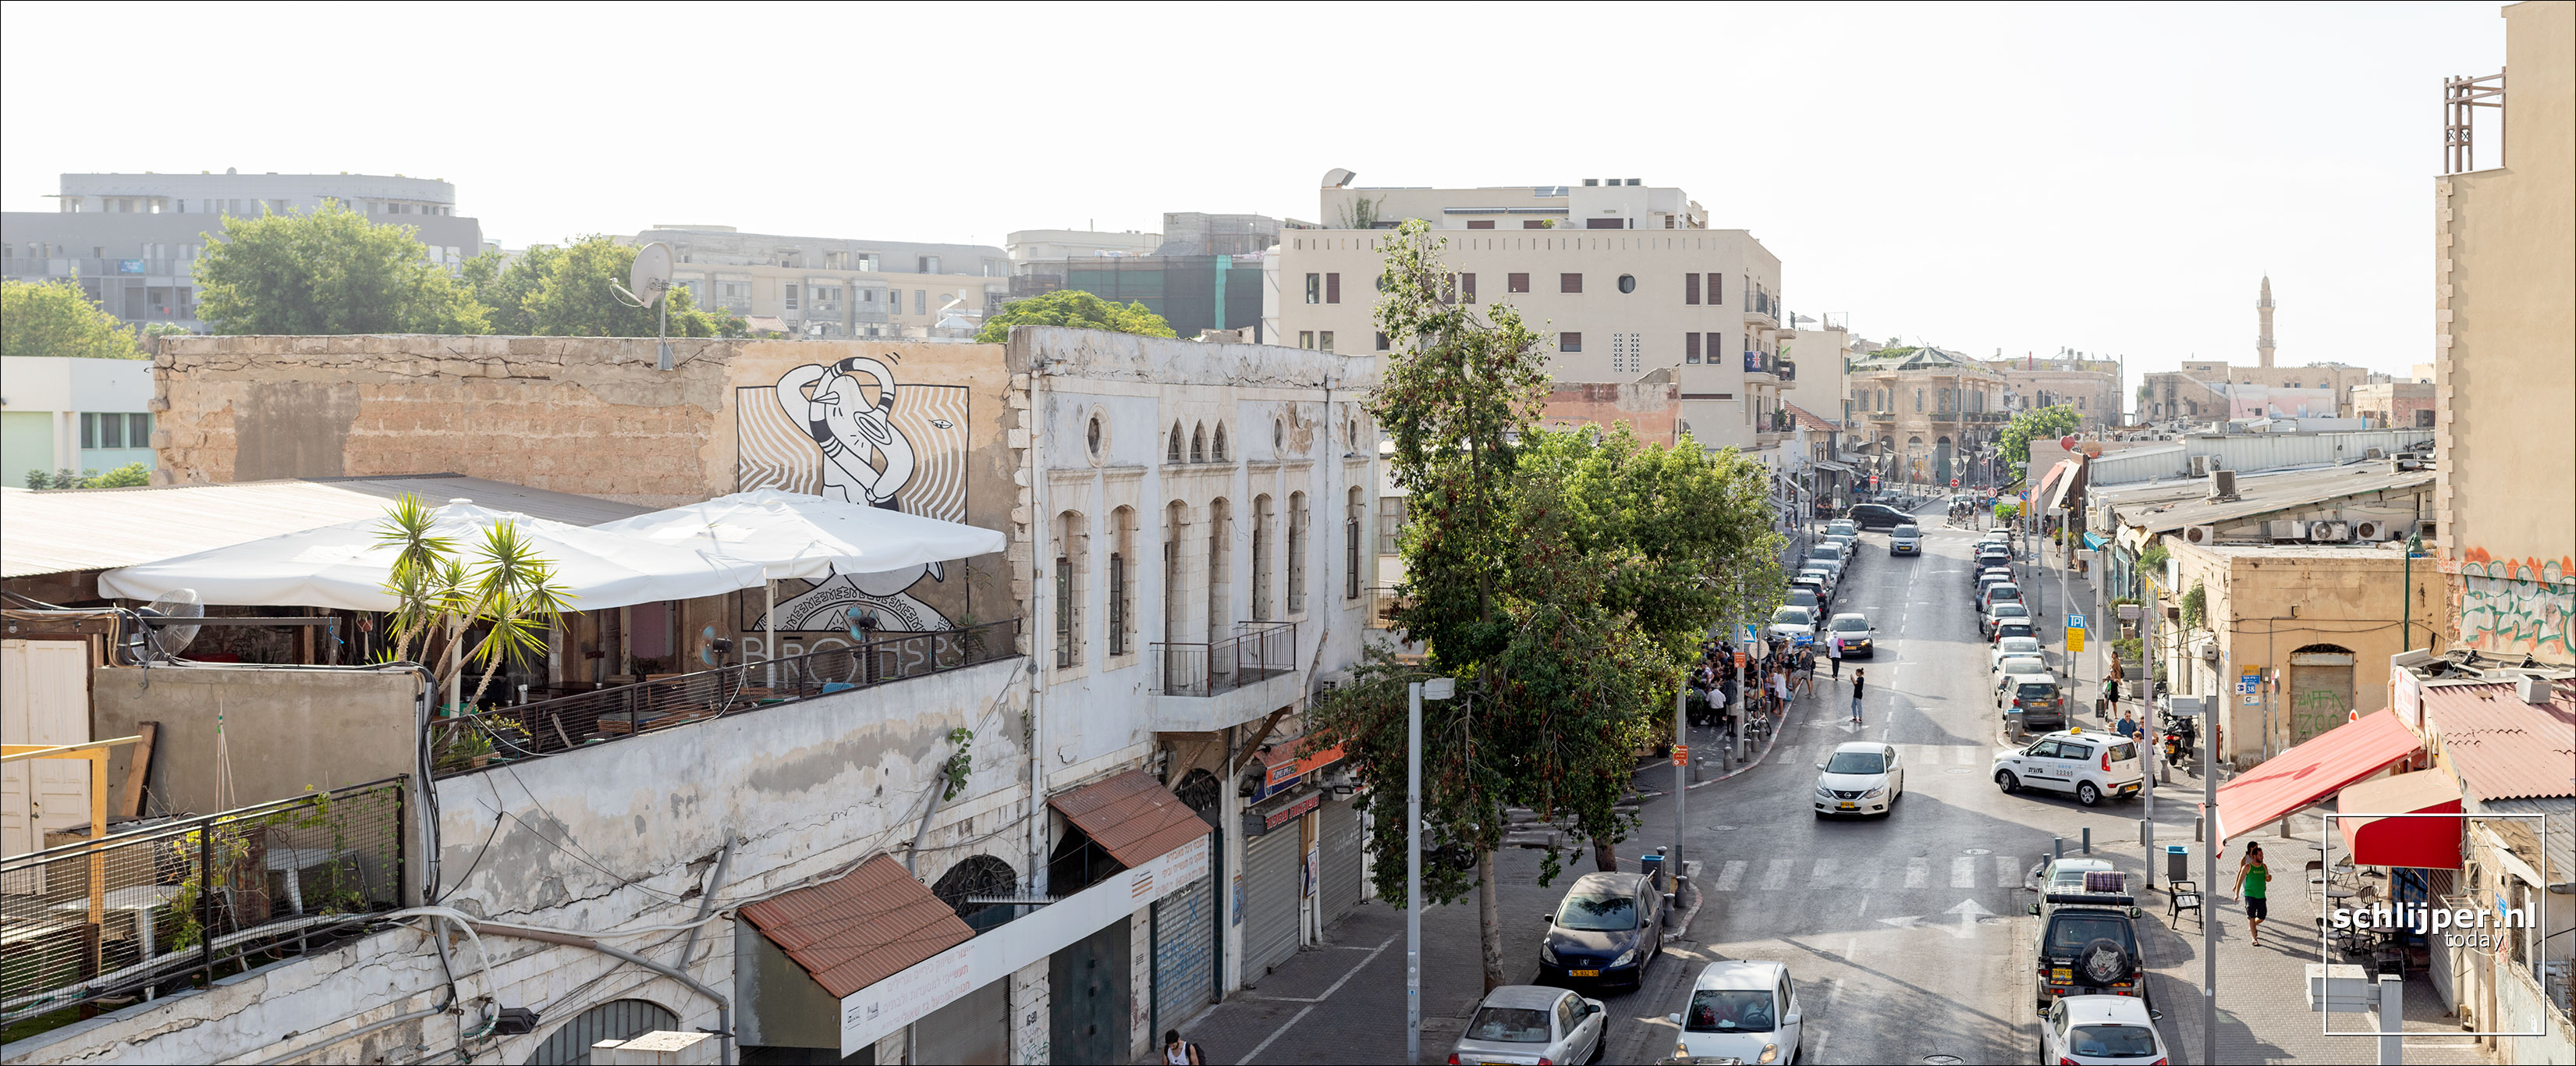 Israel, Jaffa, 12 juli 2019